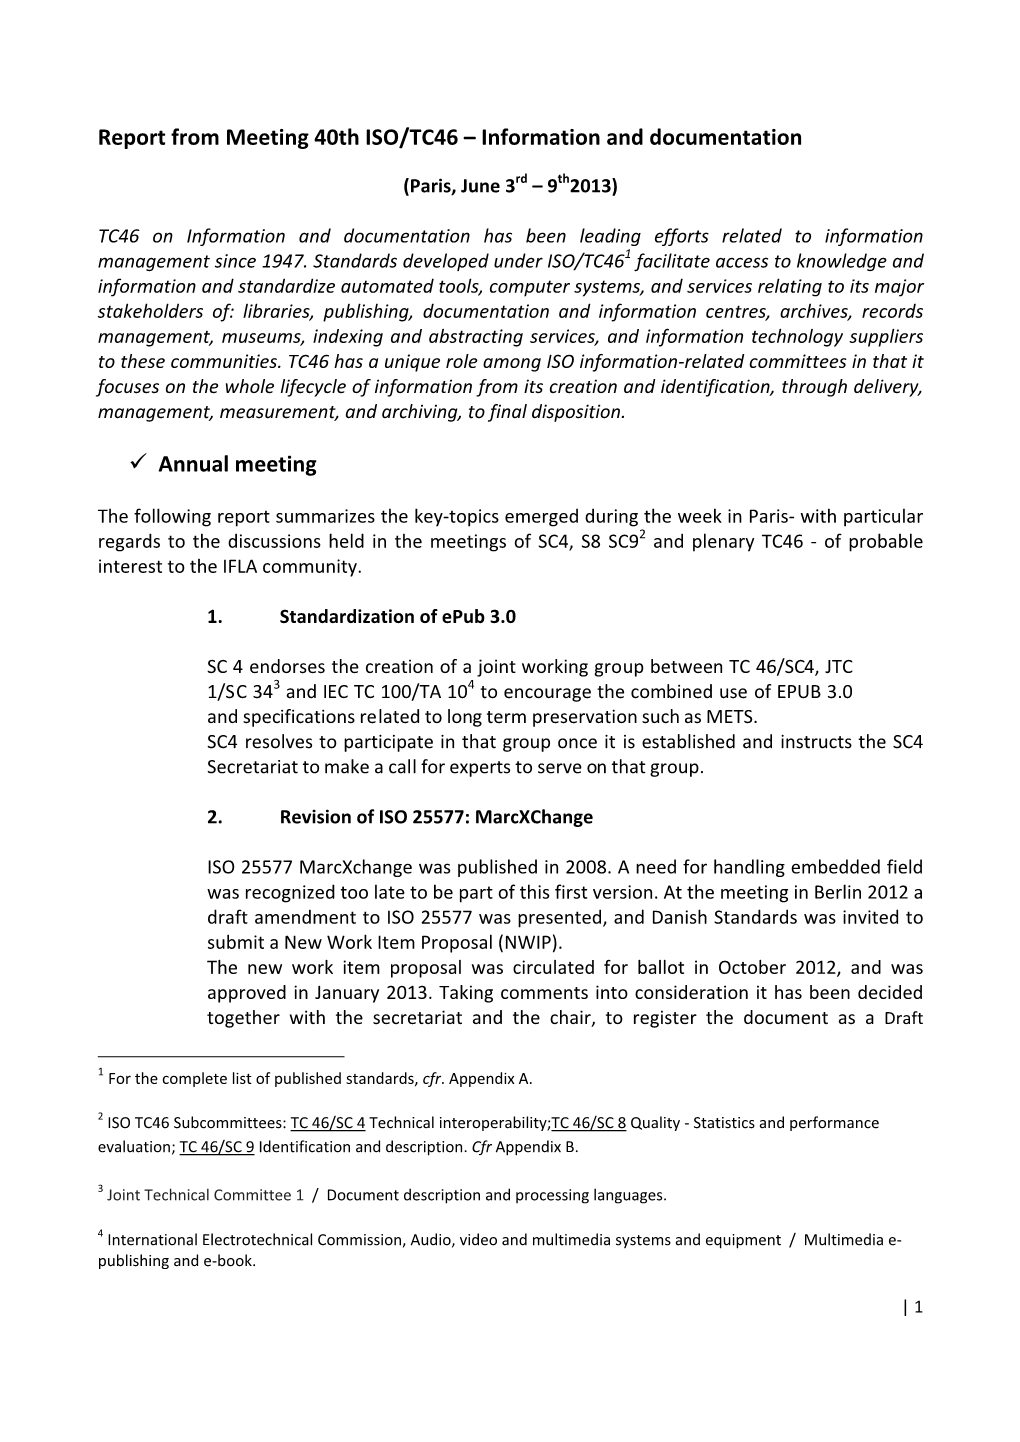 Appendix XIV ISO TC46 Report